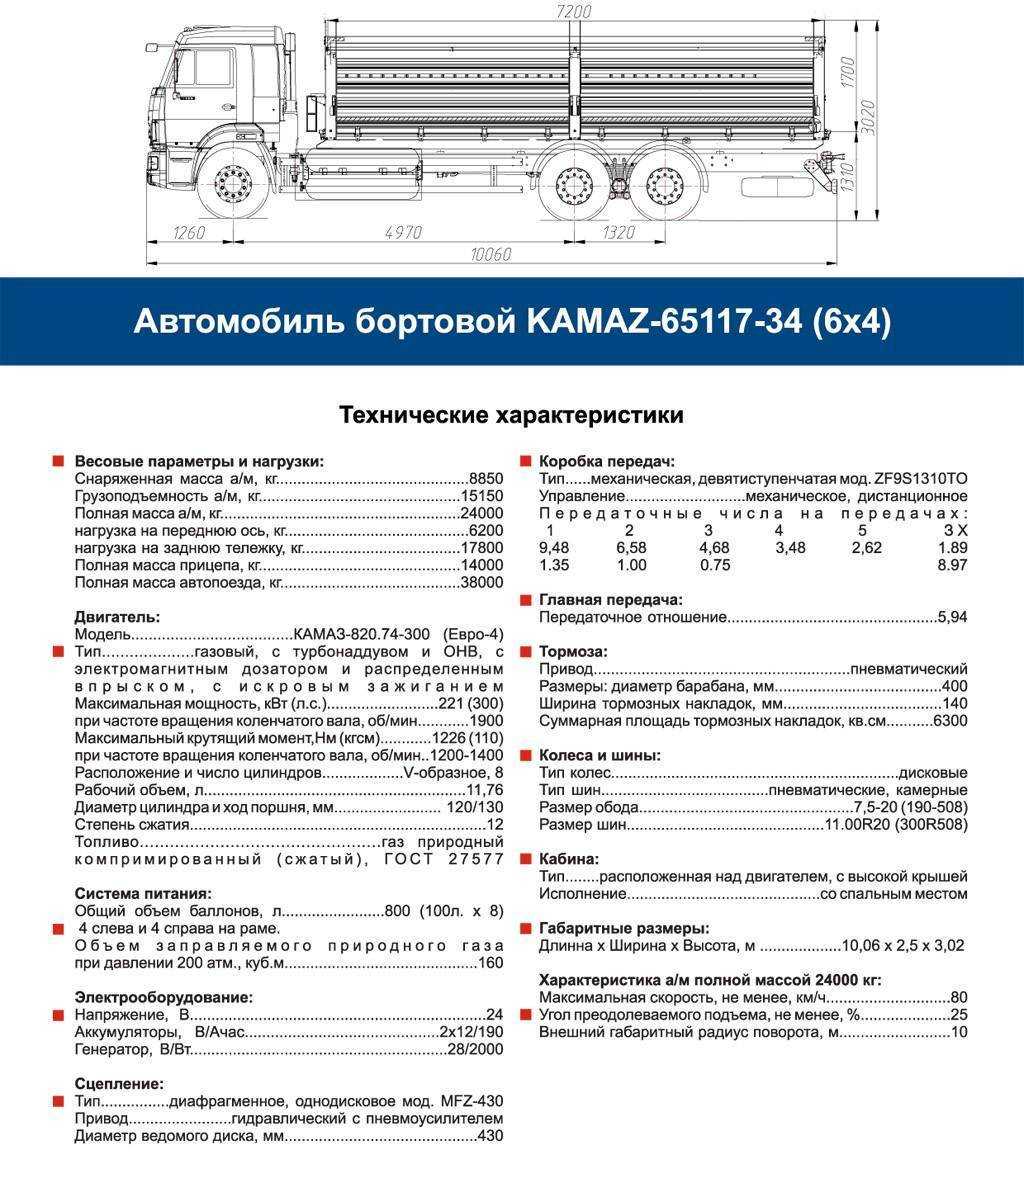 Какой вес камаза. КАМАЗ 65115 бортовой нагрузка на ось. Габариты кузова КАМАЗ 65117 бортовой. КАМАЗ 5320 бортовой технические характеристики грузоподъемность. Габариты КАМАЗ 65115 бортовой.